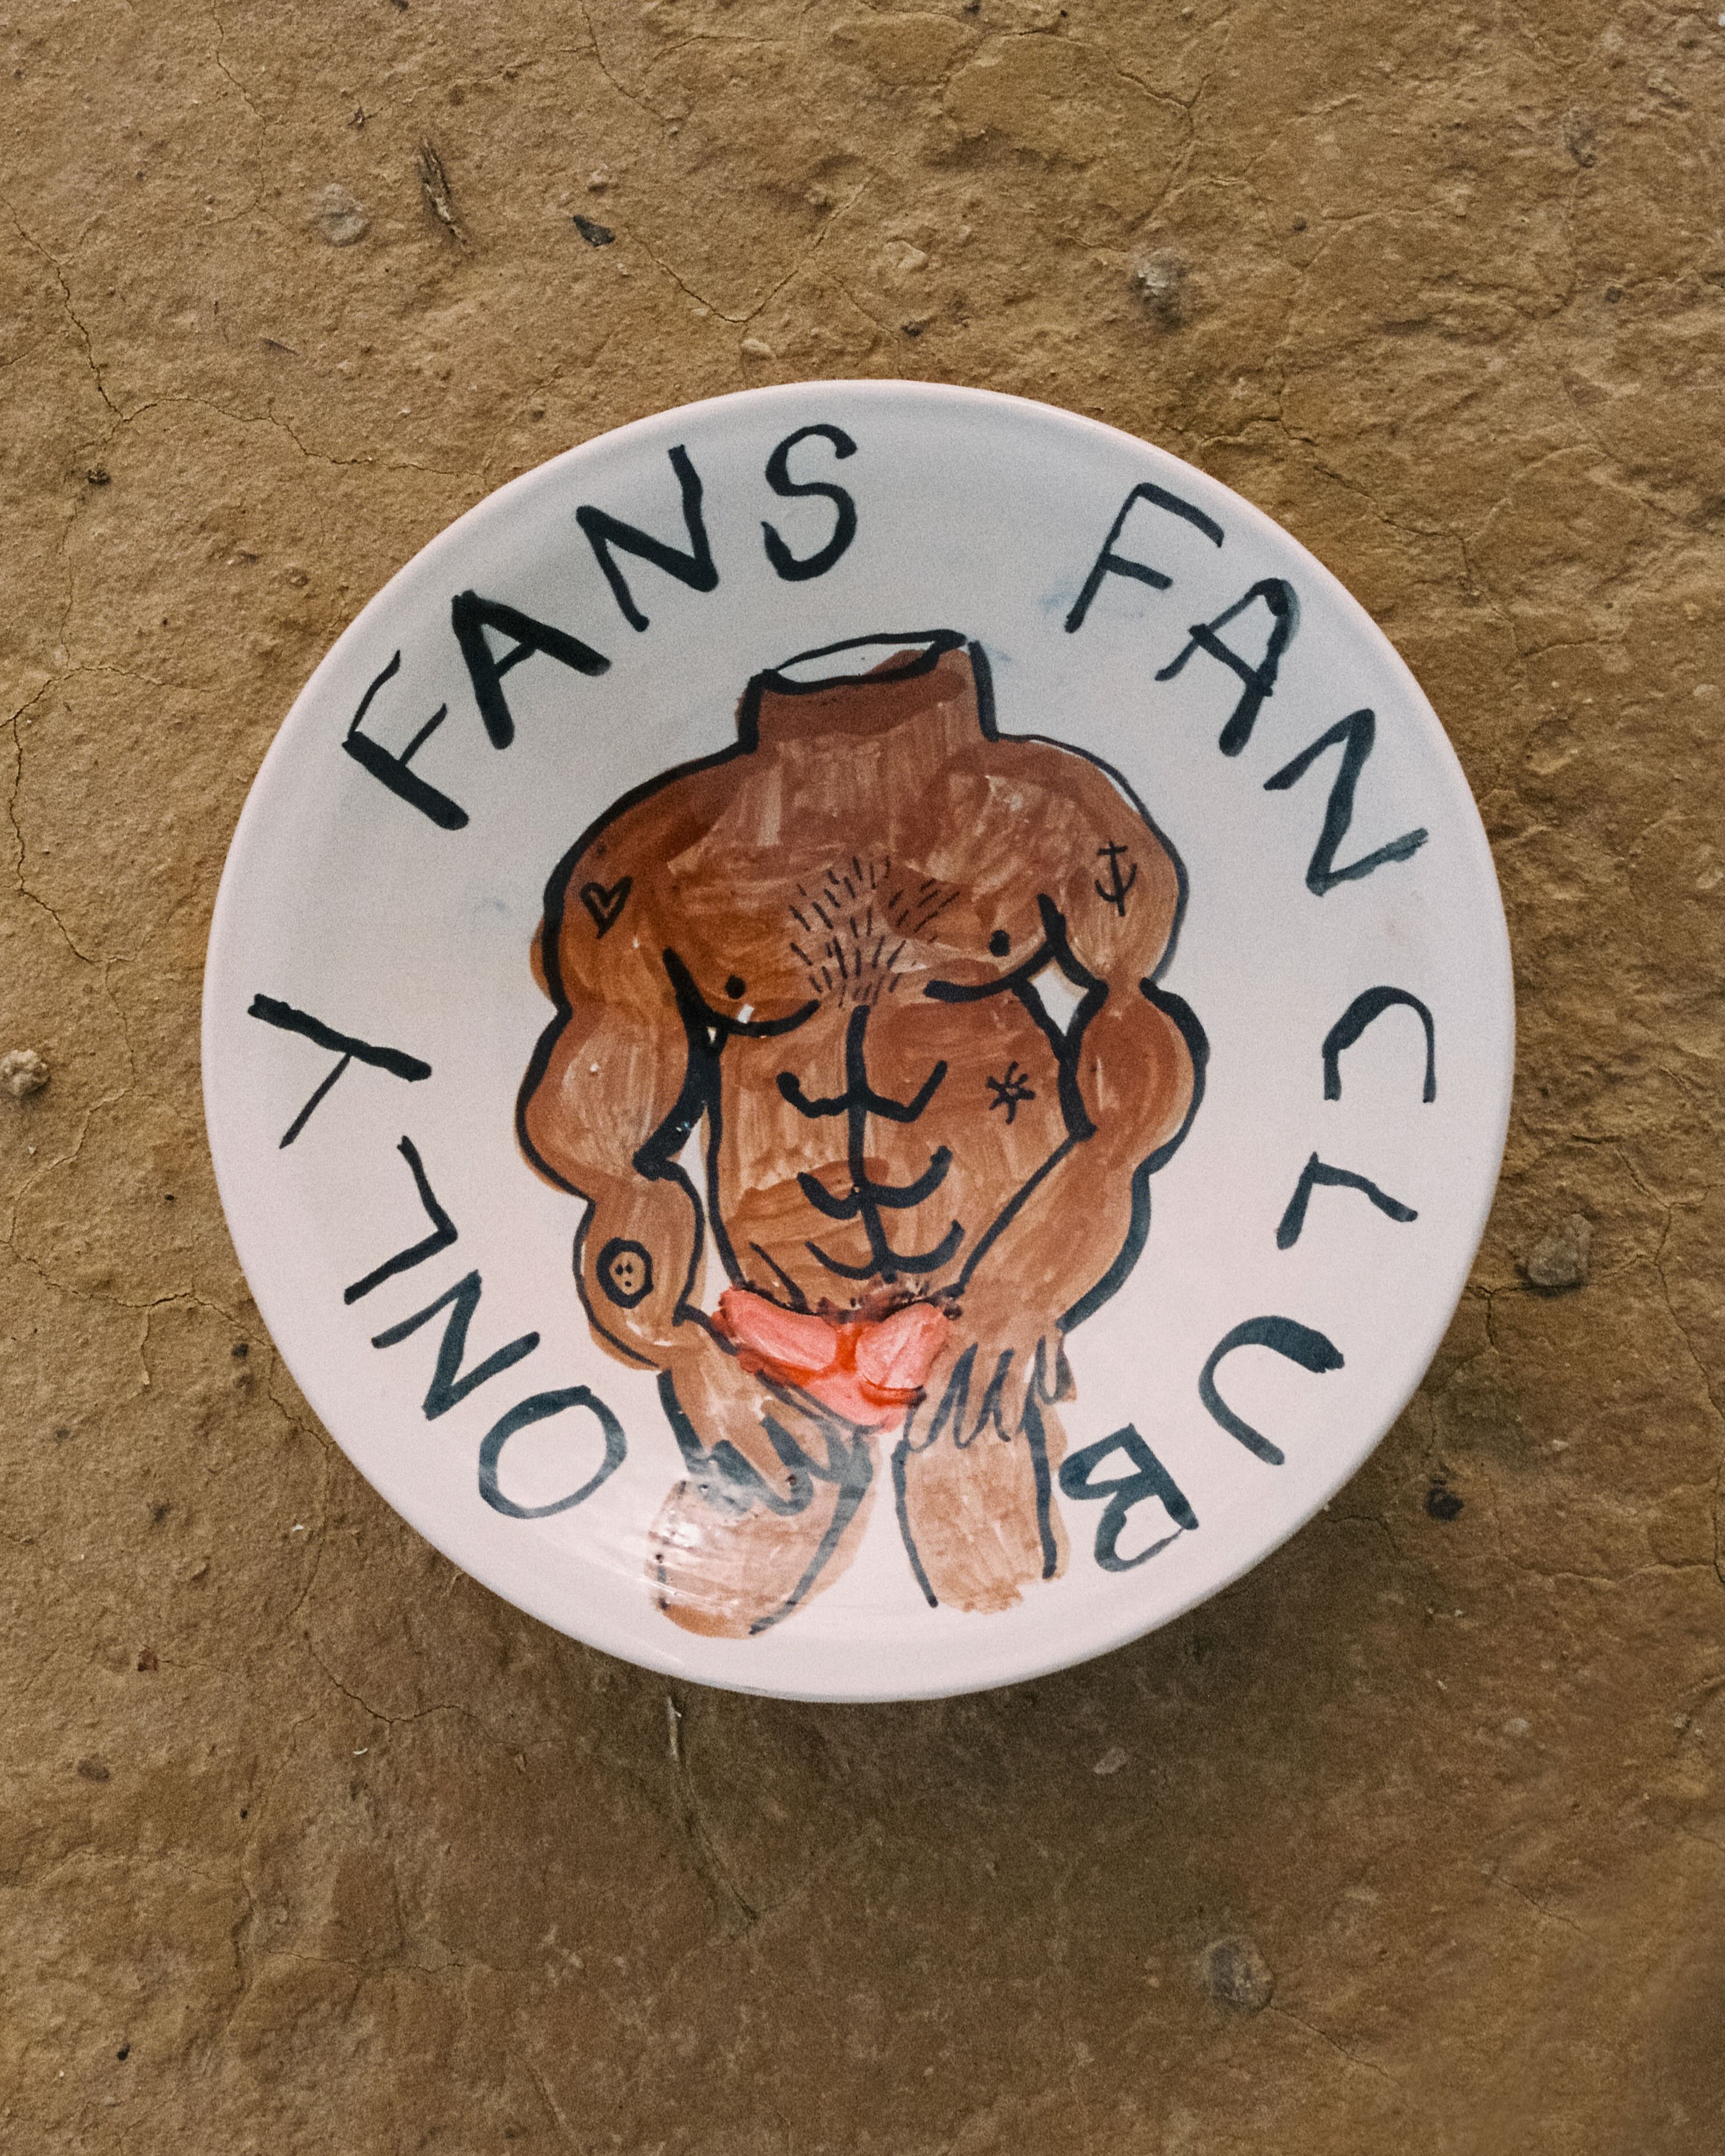 "Only Fans fan club" big platter